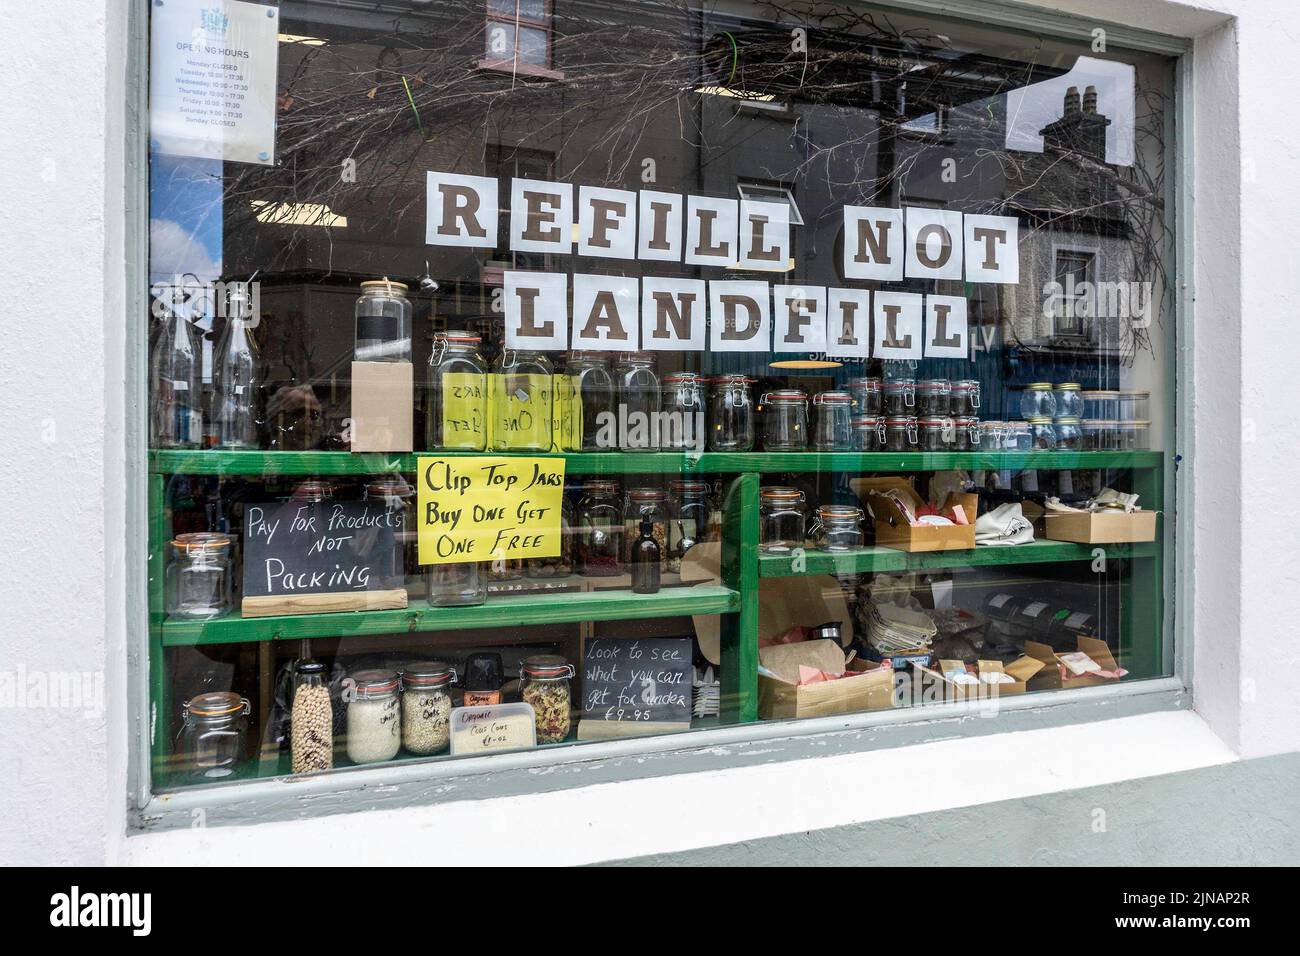 Das Schaufenster der Tankstelle, Abbeygate St, Galway, Irland. Verkauf einer Reihe von getrockneten Lebensmitteln, umweltfreundlichen Haushaltsartikeln und Hautpflegeartikeln. Stockfoto